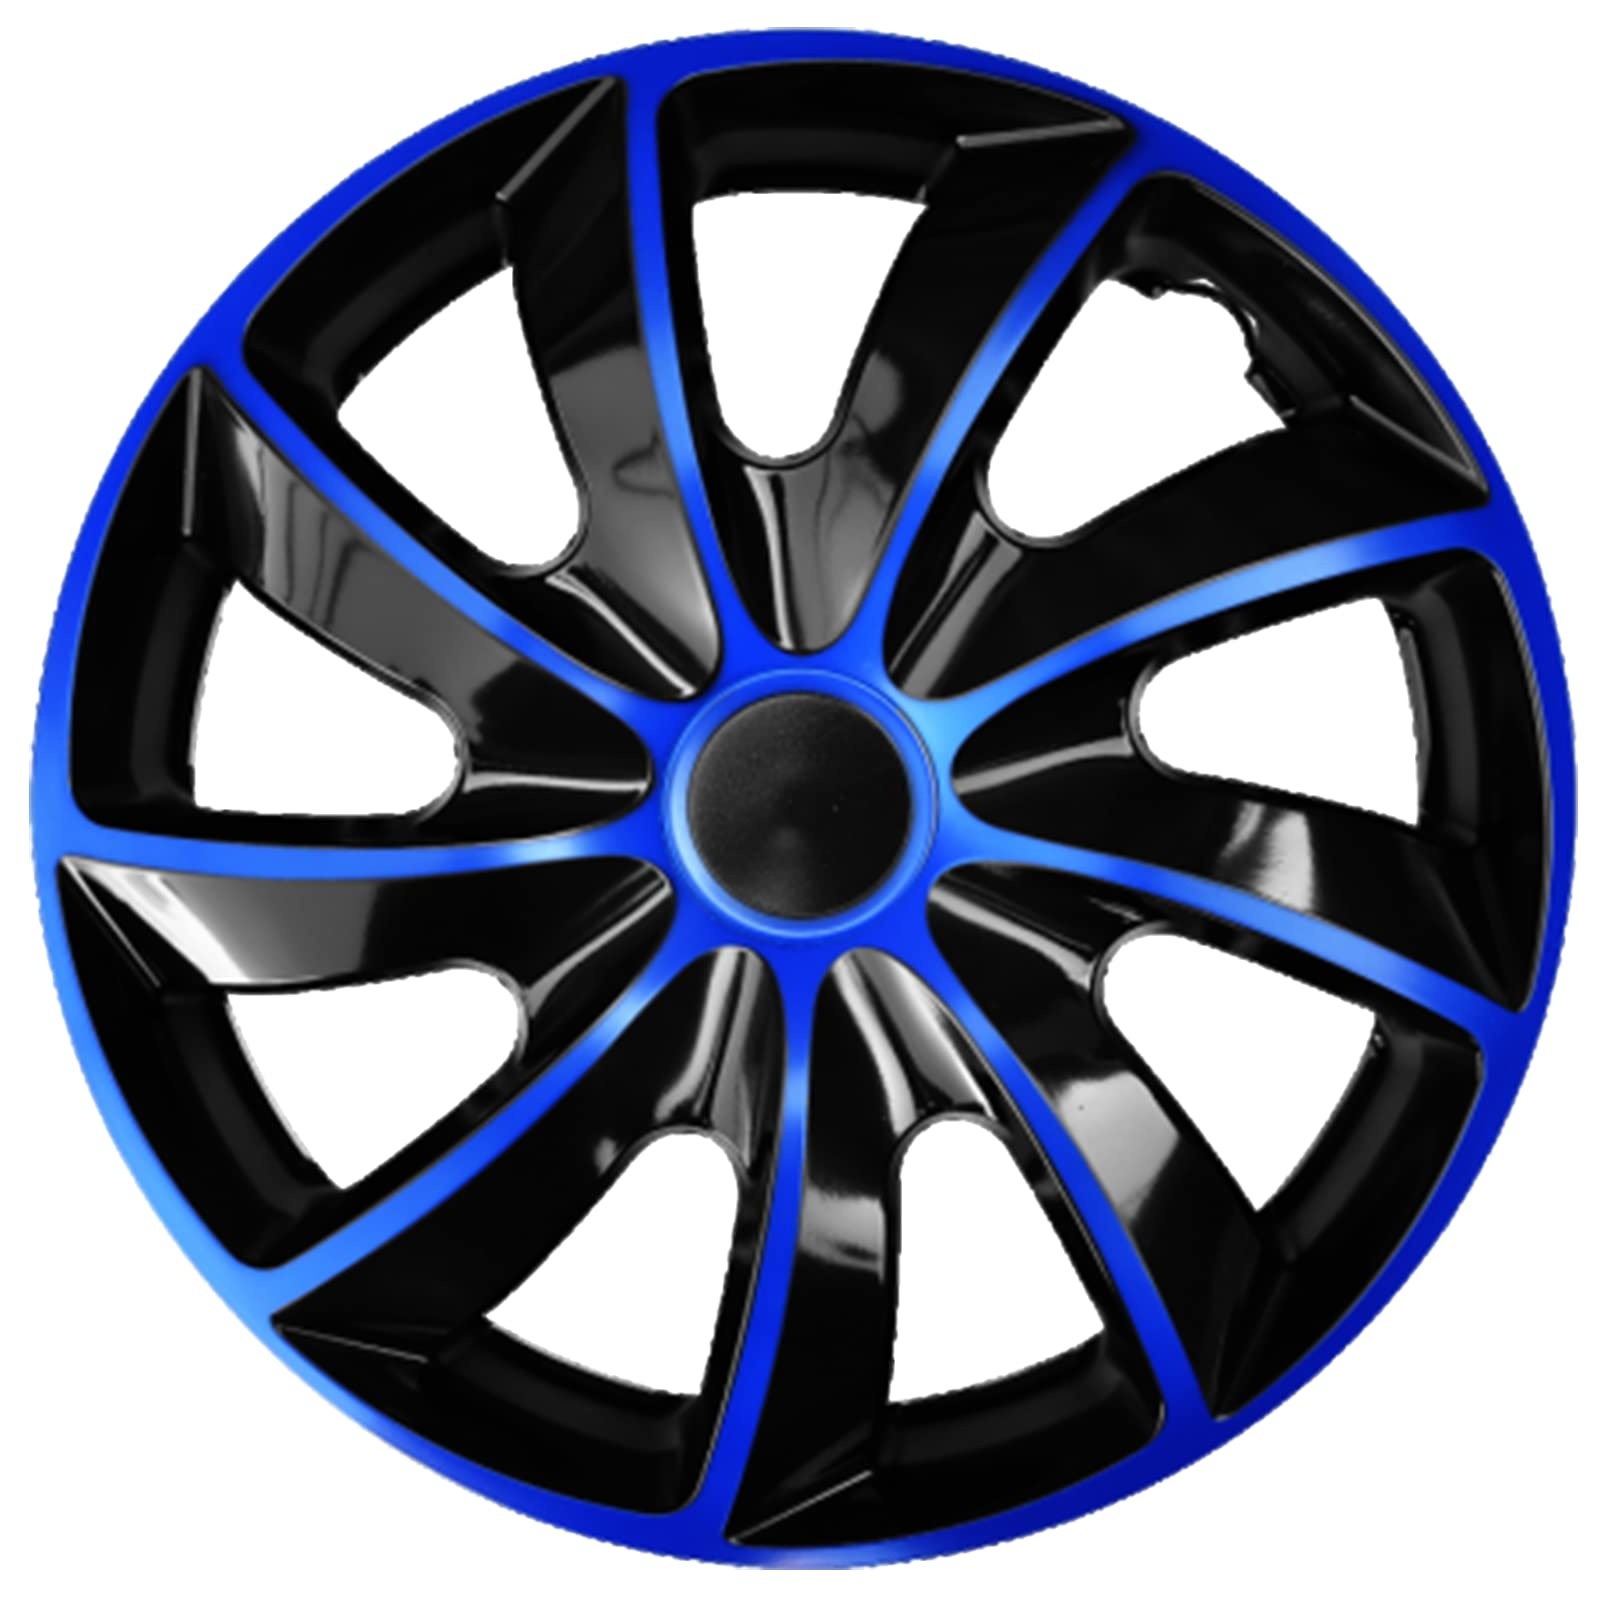 Ohmtronixx Quad Radkappen 17 Zoll 4er Set, blau-schwarz, Radzierblenden aus ABS Kunststoff